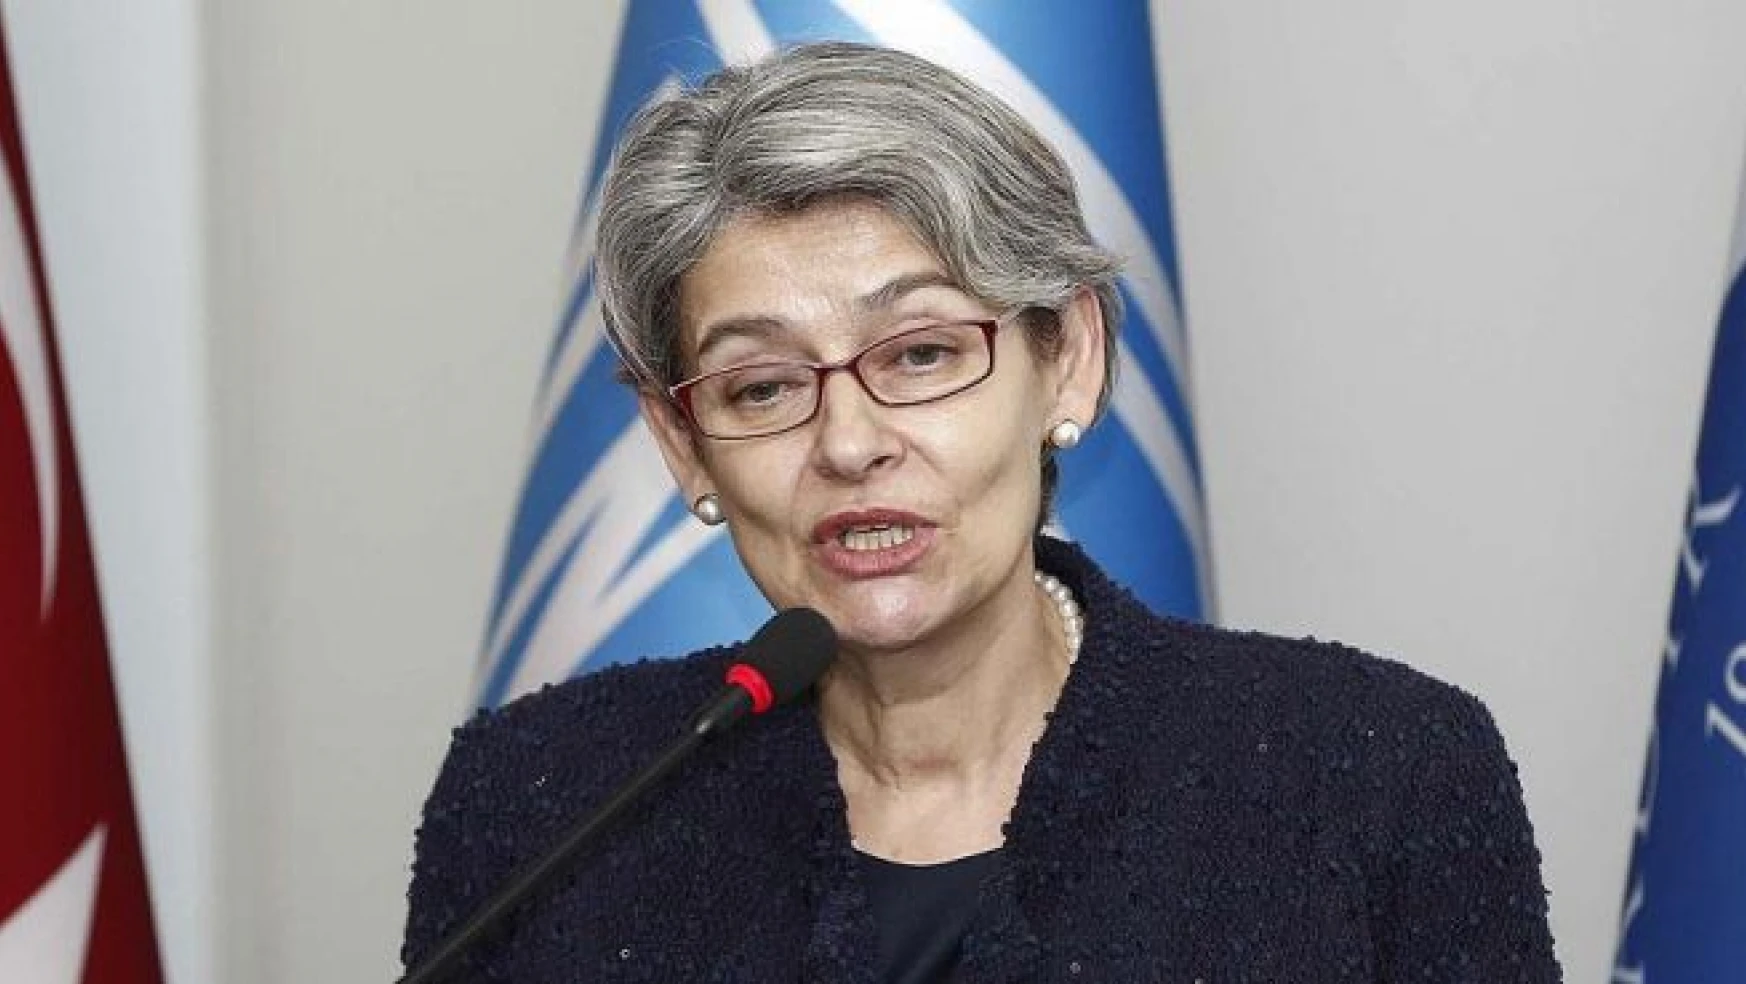 Bulgaristan'dan BM'ye Genel Sekreter adayı